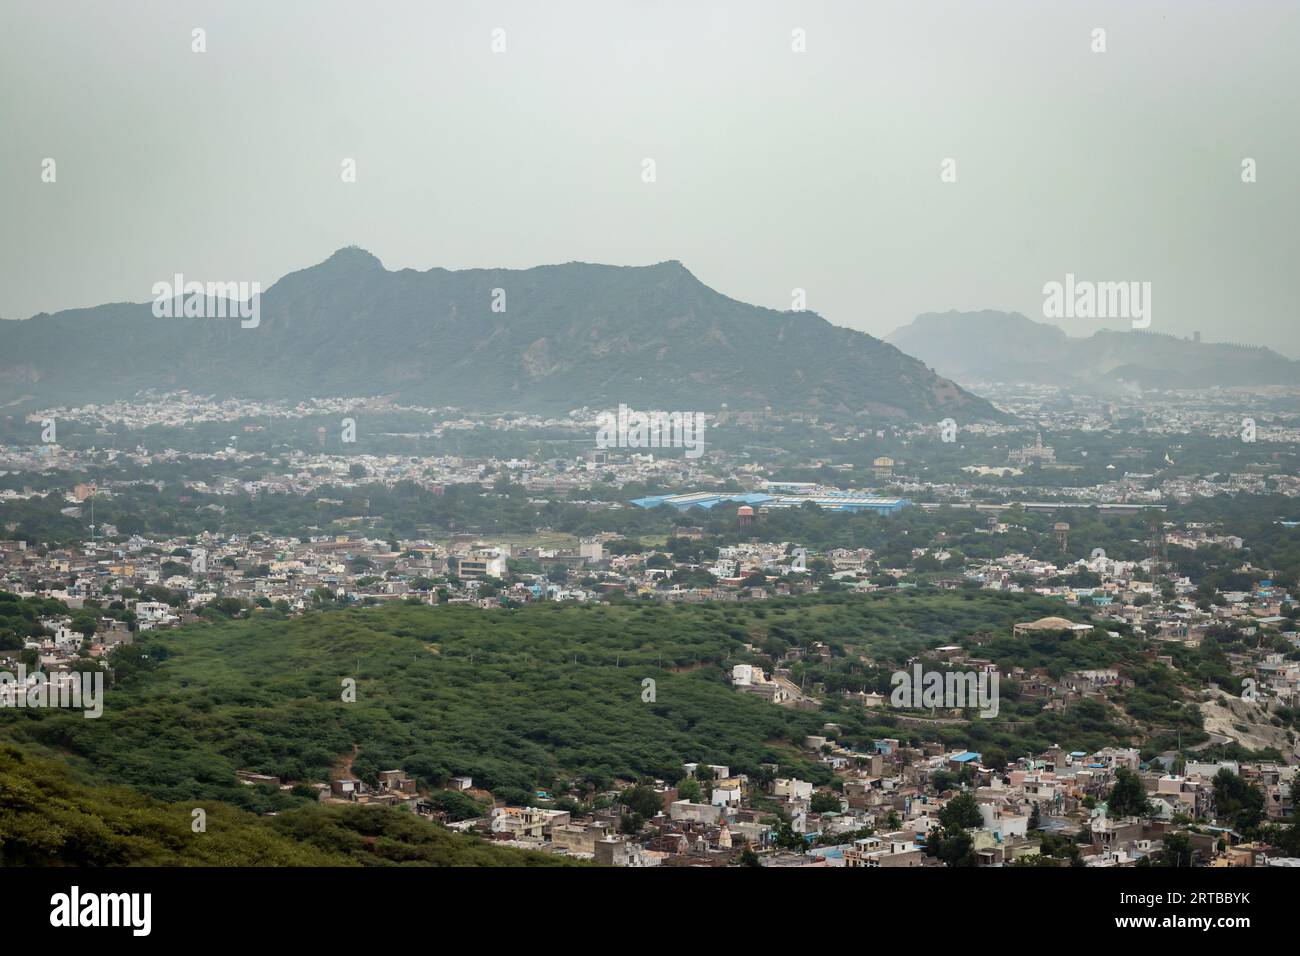 affollate case cittadine con un paesaggio di montagna nebbioso al mattino da un angolo piatto, l'immagine viene scattata ad ajmer rajasthan india Foto Stock